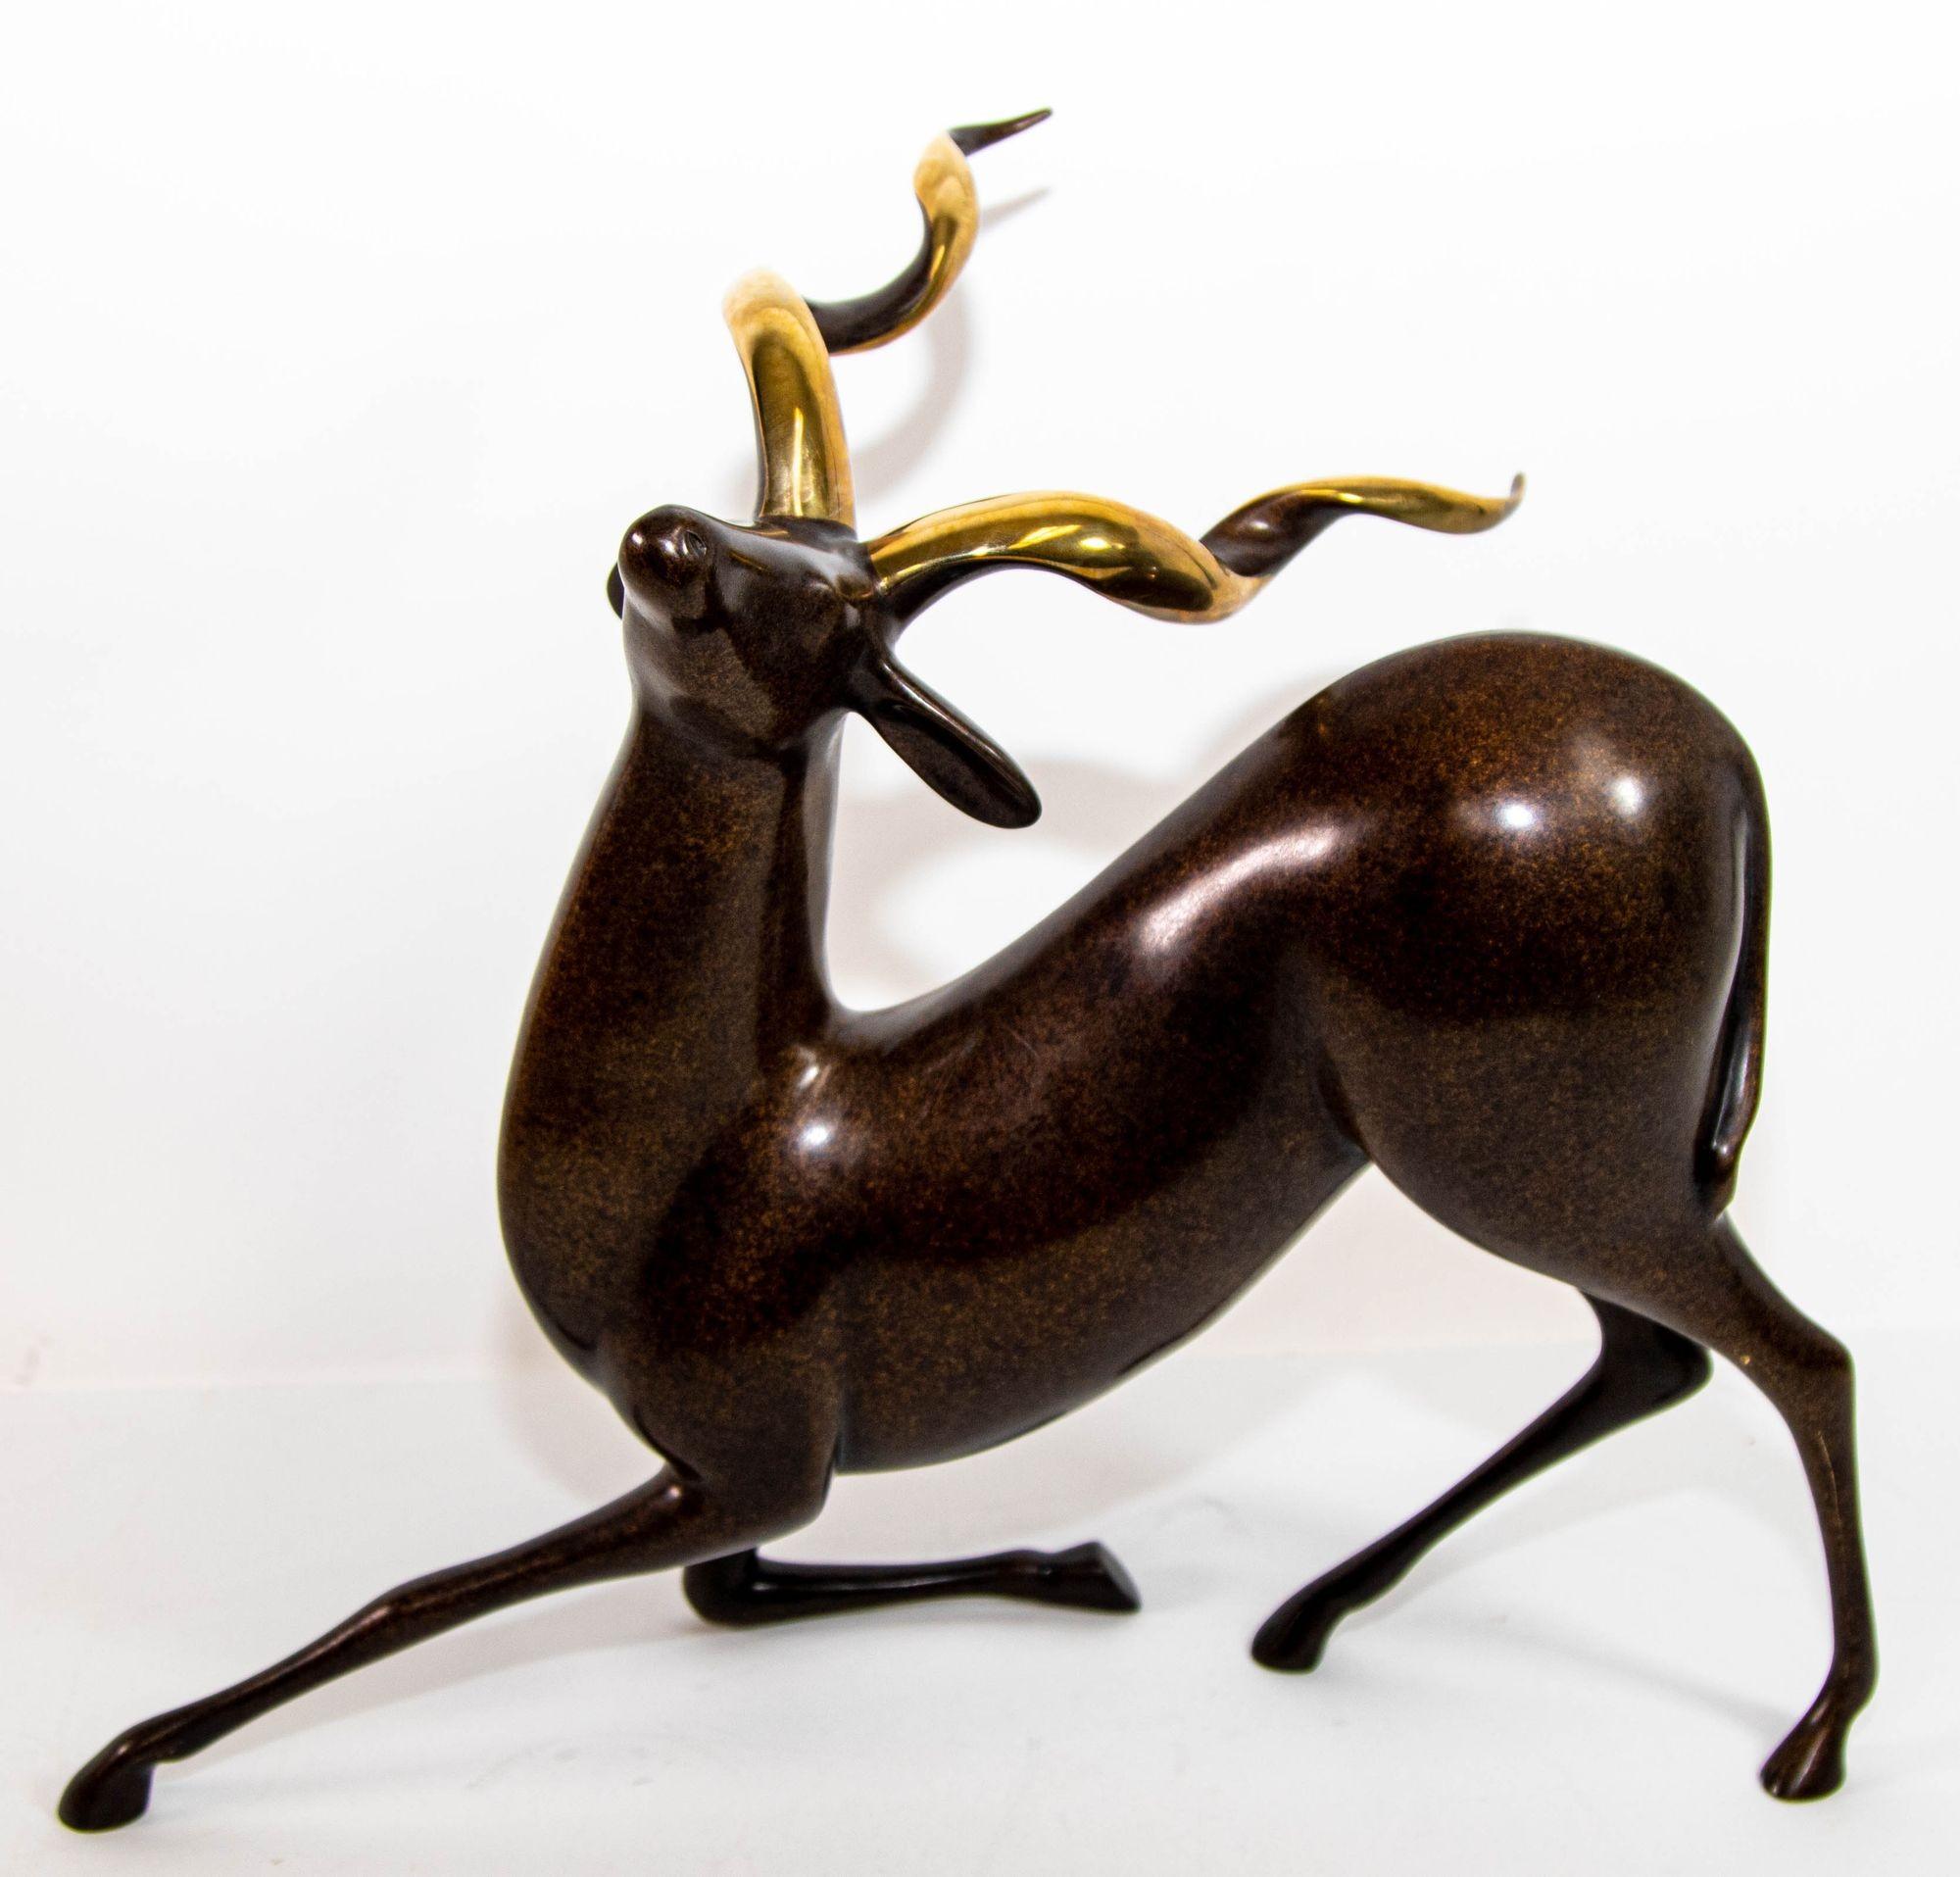 Original Loet Vanderveen limitierte Auflage Bronze Kudu-Skulptur, dunkle Bronze 2-Ton mit Gold Horn Wildtier Skulptur.
Hervorragende stilisierte Langhorn-Antilopen-Kudu-Figur aus tief dunkel patinierter Bronze.
Auffallend schöne große Bronze schwarz